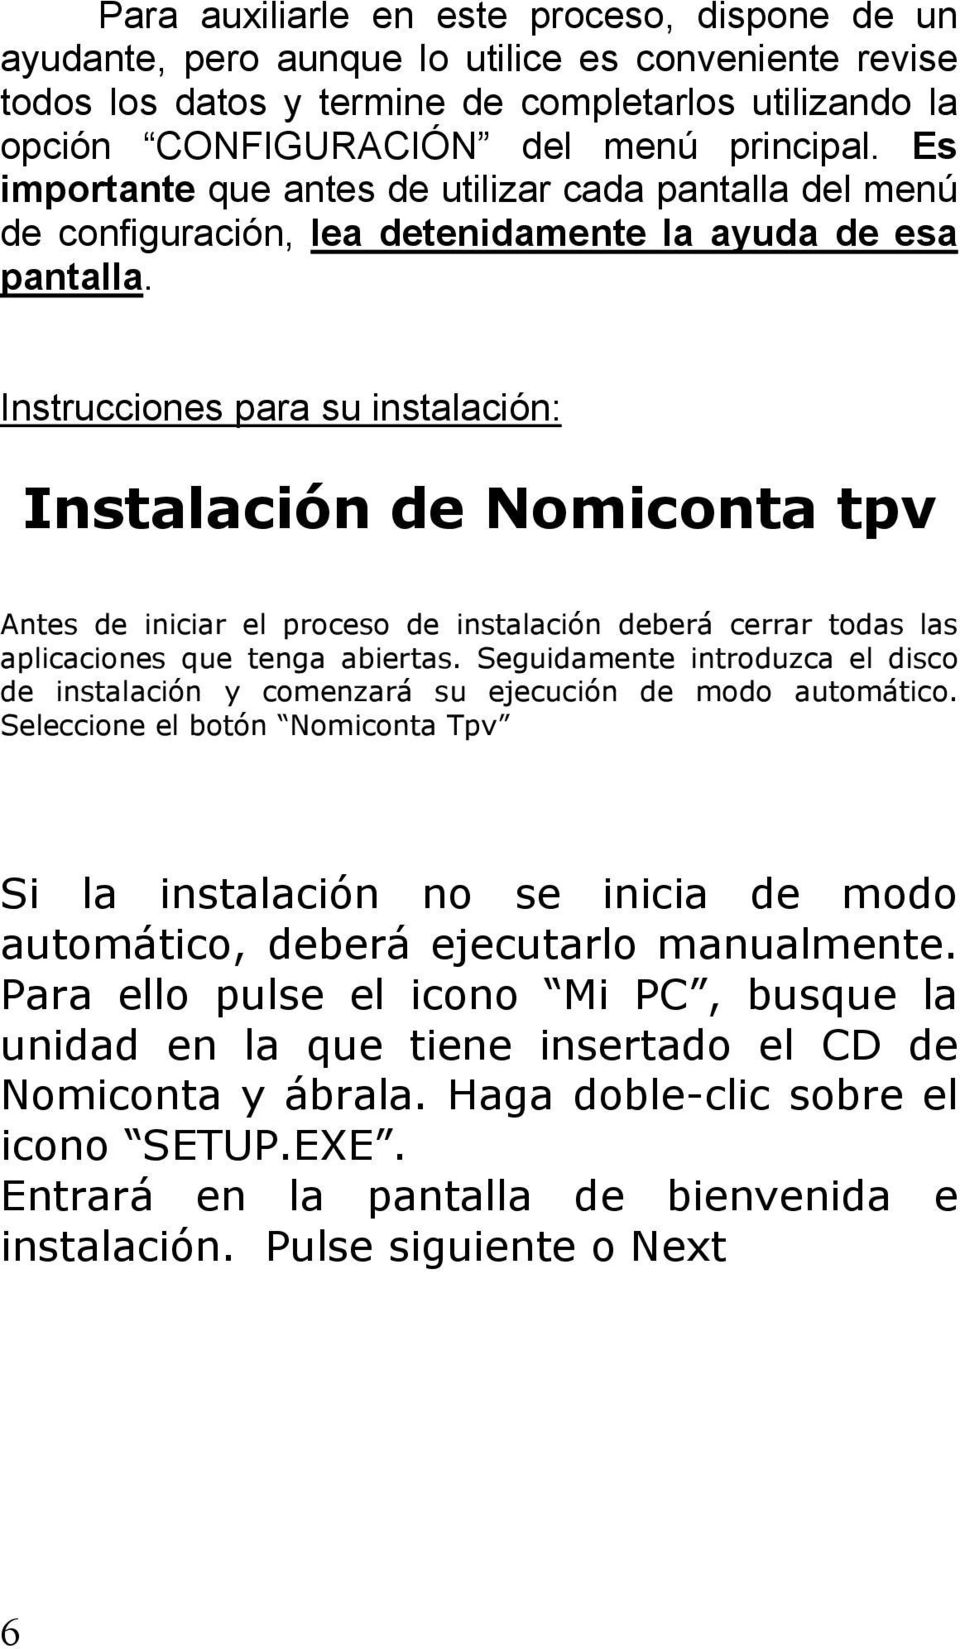 Instrucciones para su instalación: Instalación de Nomiconta tpv Antes de iniciar el proceso de instalación deberá cerrar todas las aplicaciones que tenga abiertas.